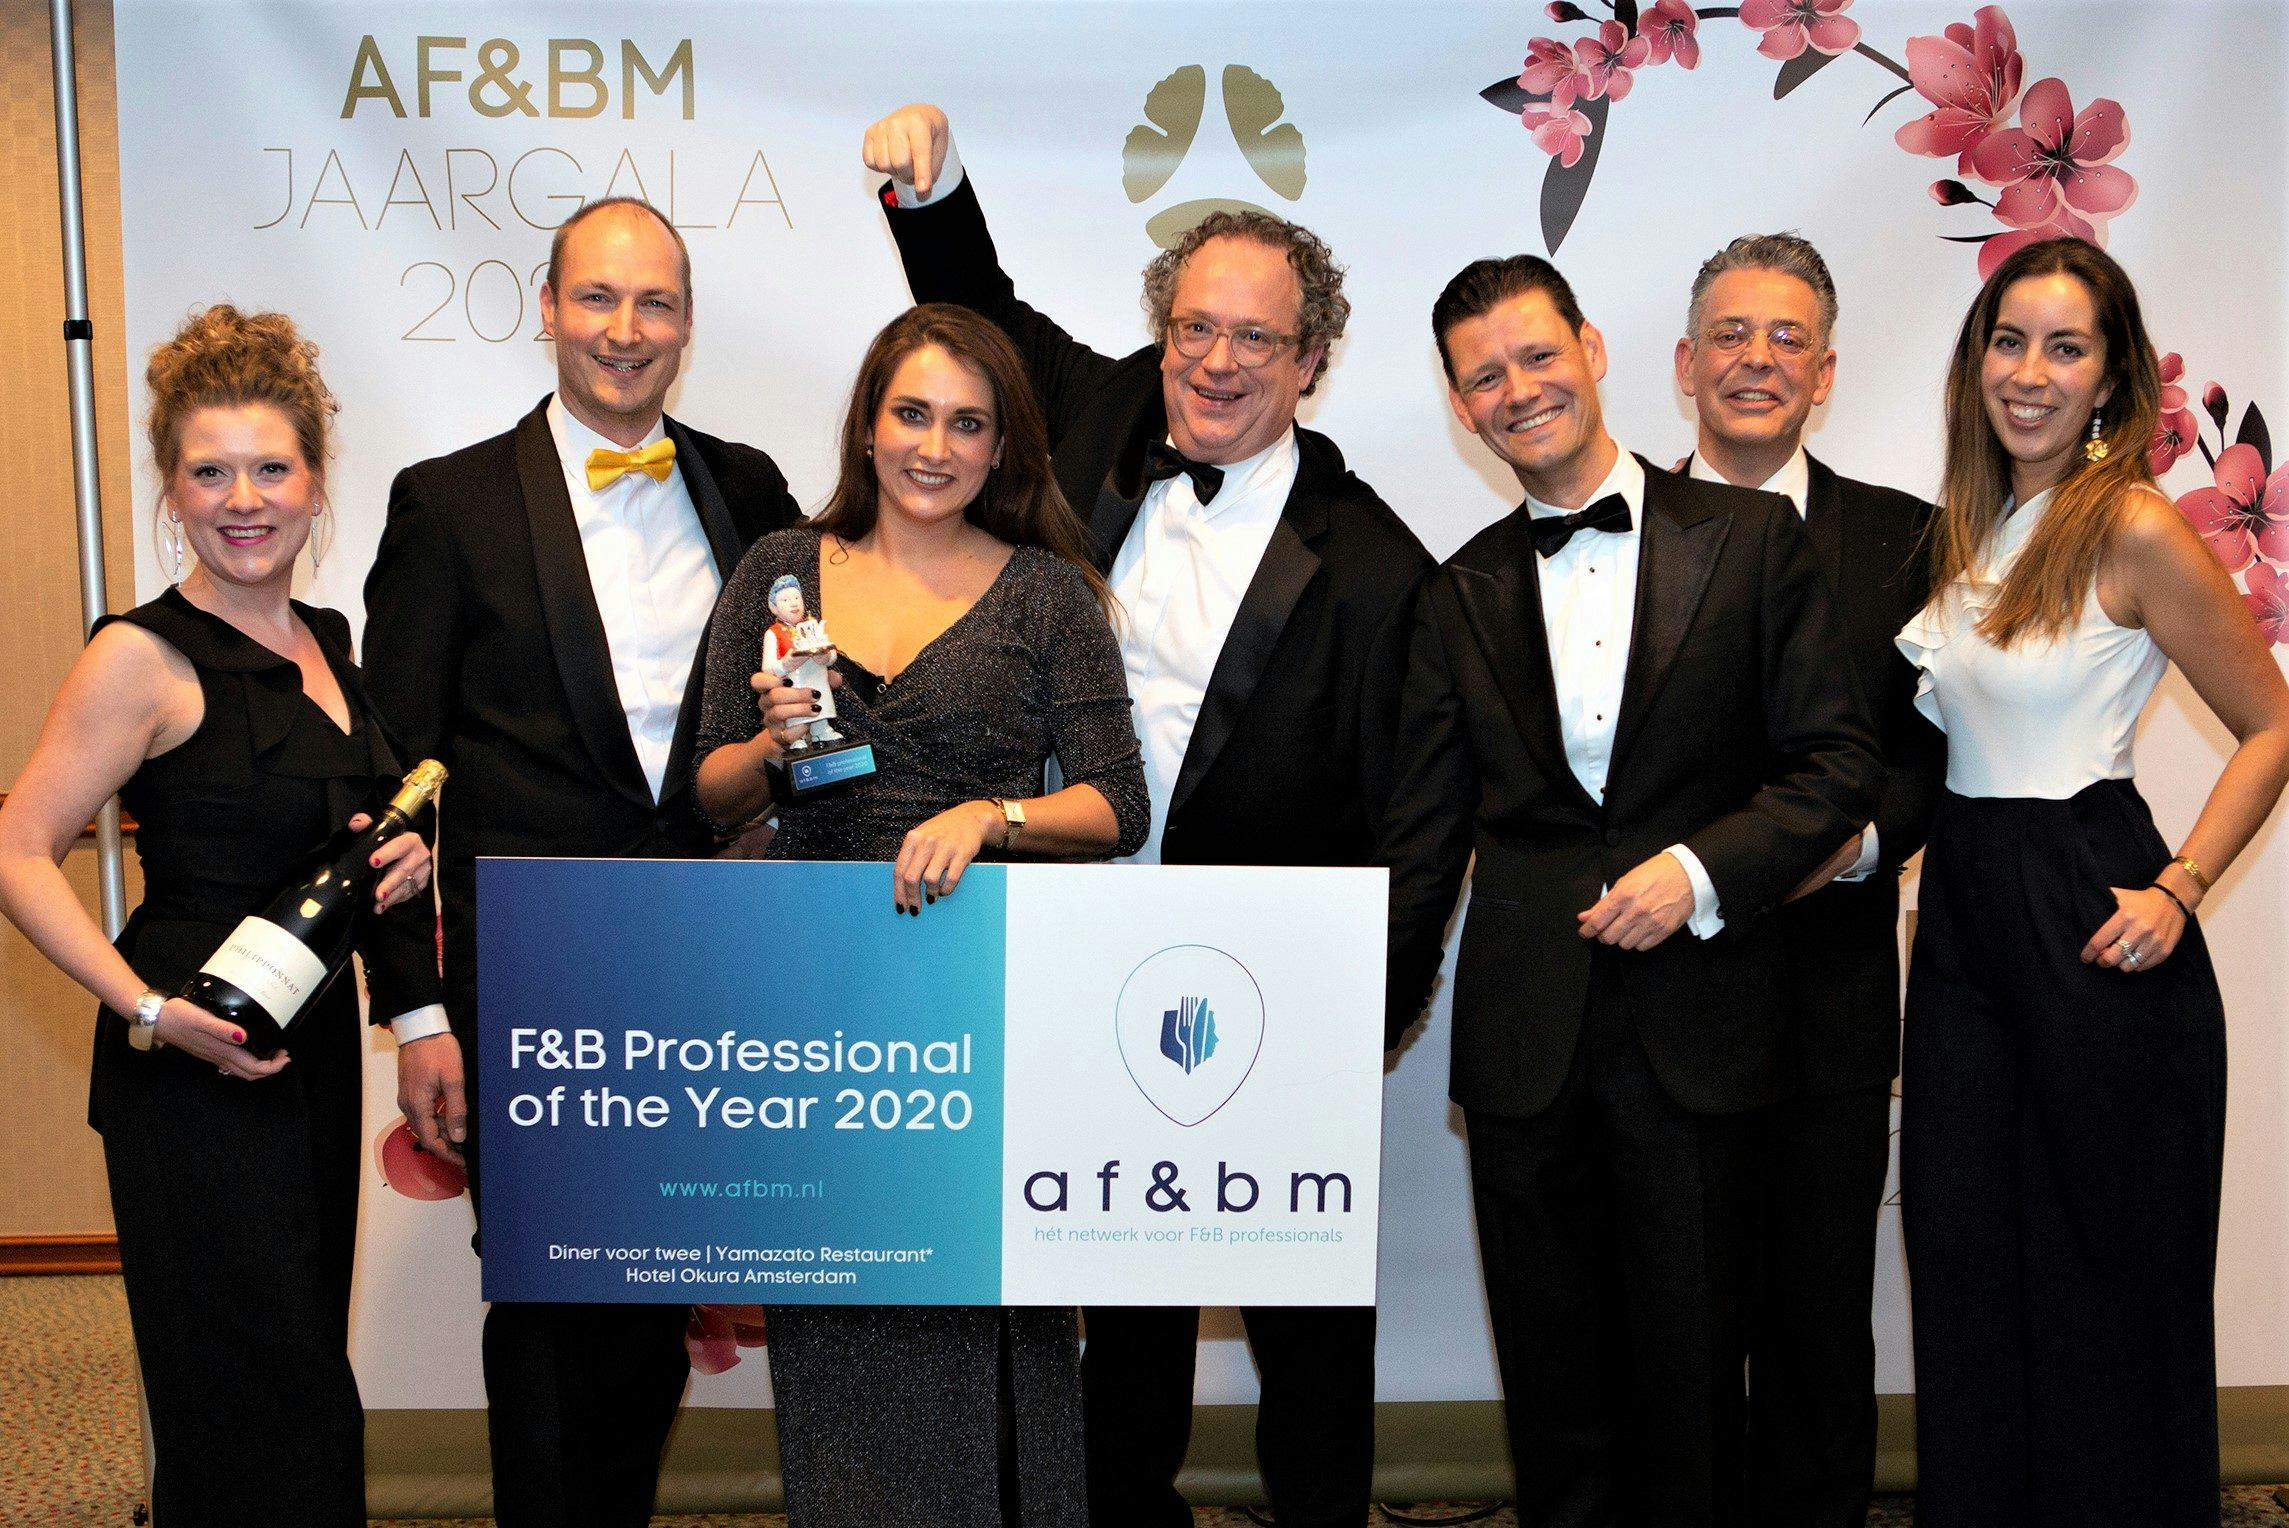 Nomineren voor de F&B Professional of the Year 2021 kan nog tot 31 december